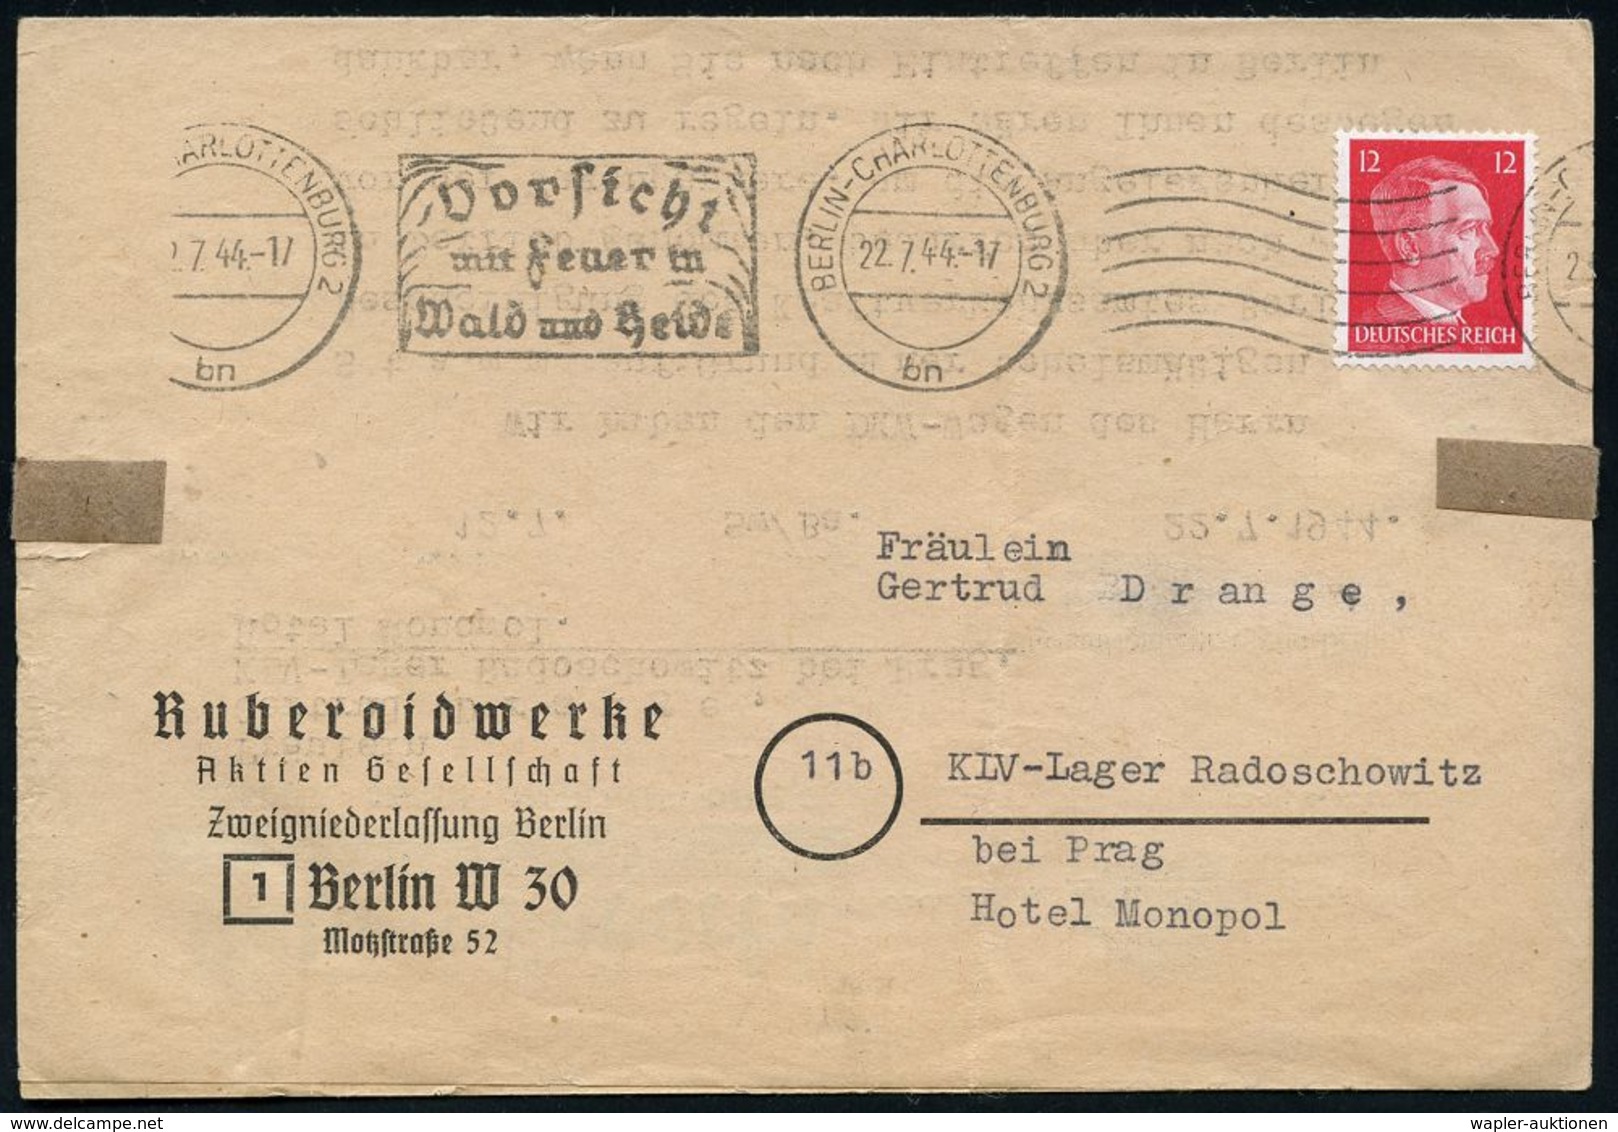 II. WELTKRIEG (1939 - 1945) : BERLIN-CHARLOTTENBURG 2/ Bn/ Vorsicht/ Mit Feuer In/ Wald U.Heide 1944 (22.7.) Bd.MWSt + 6 - Guerre Mondiale (Seconde)